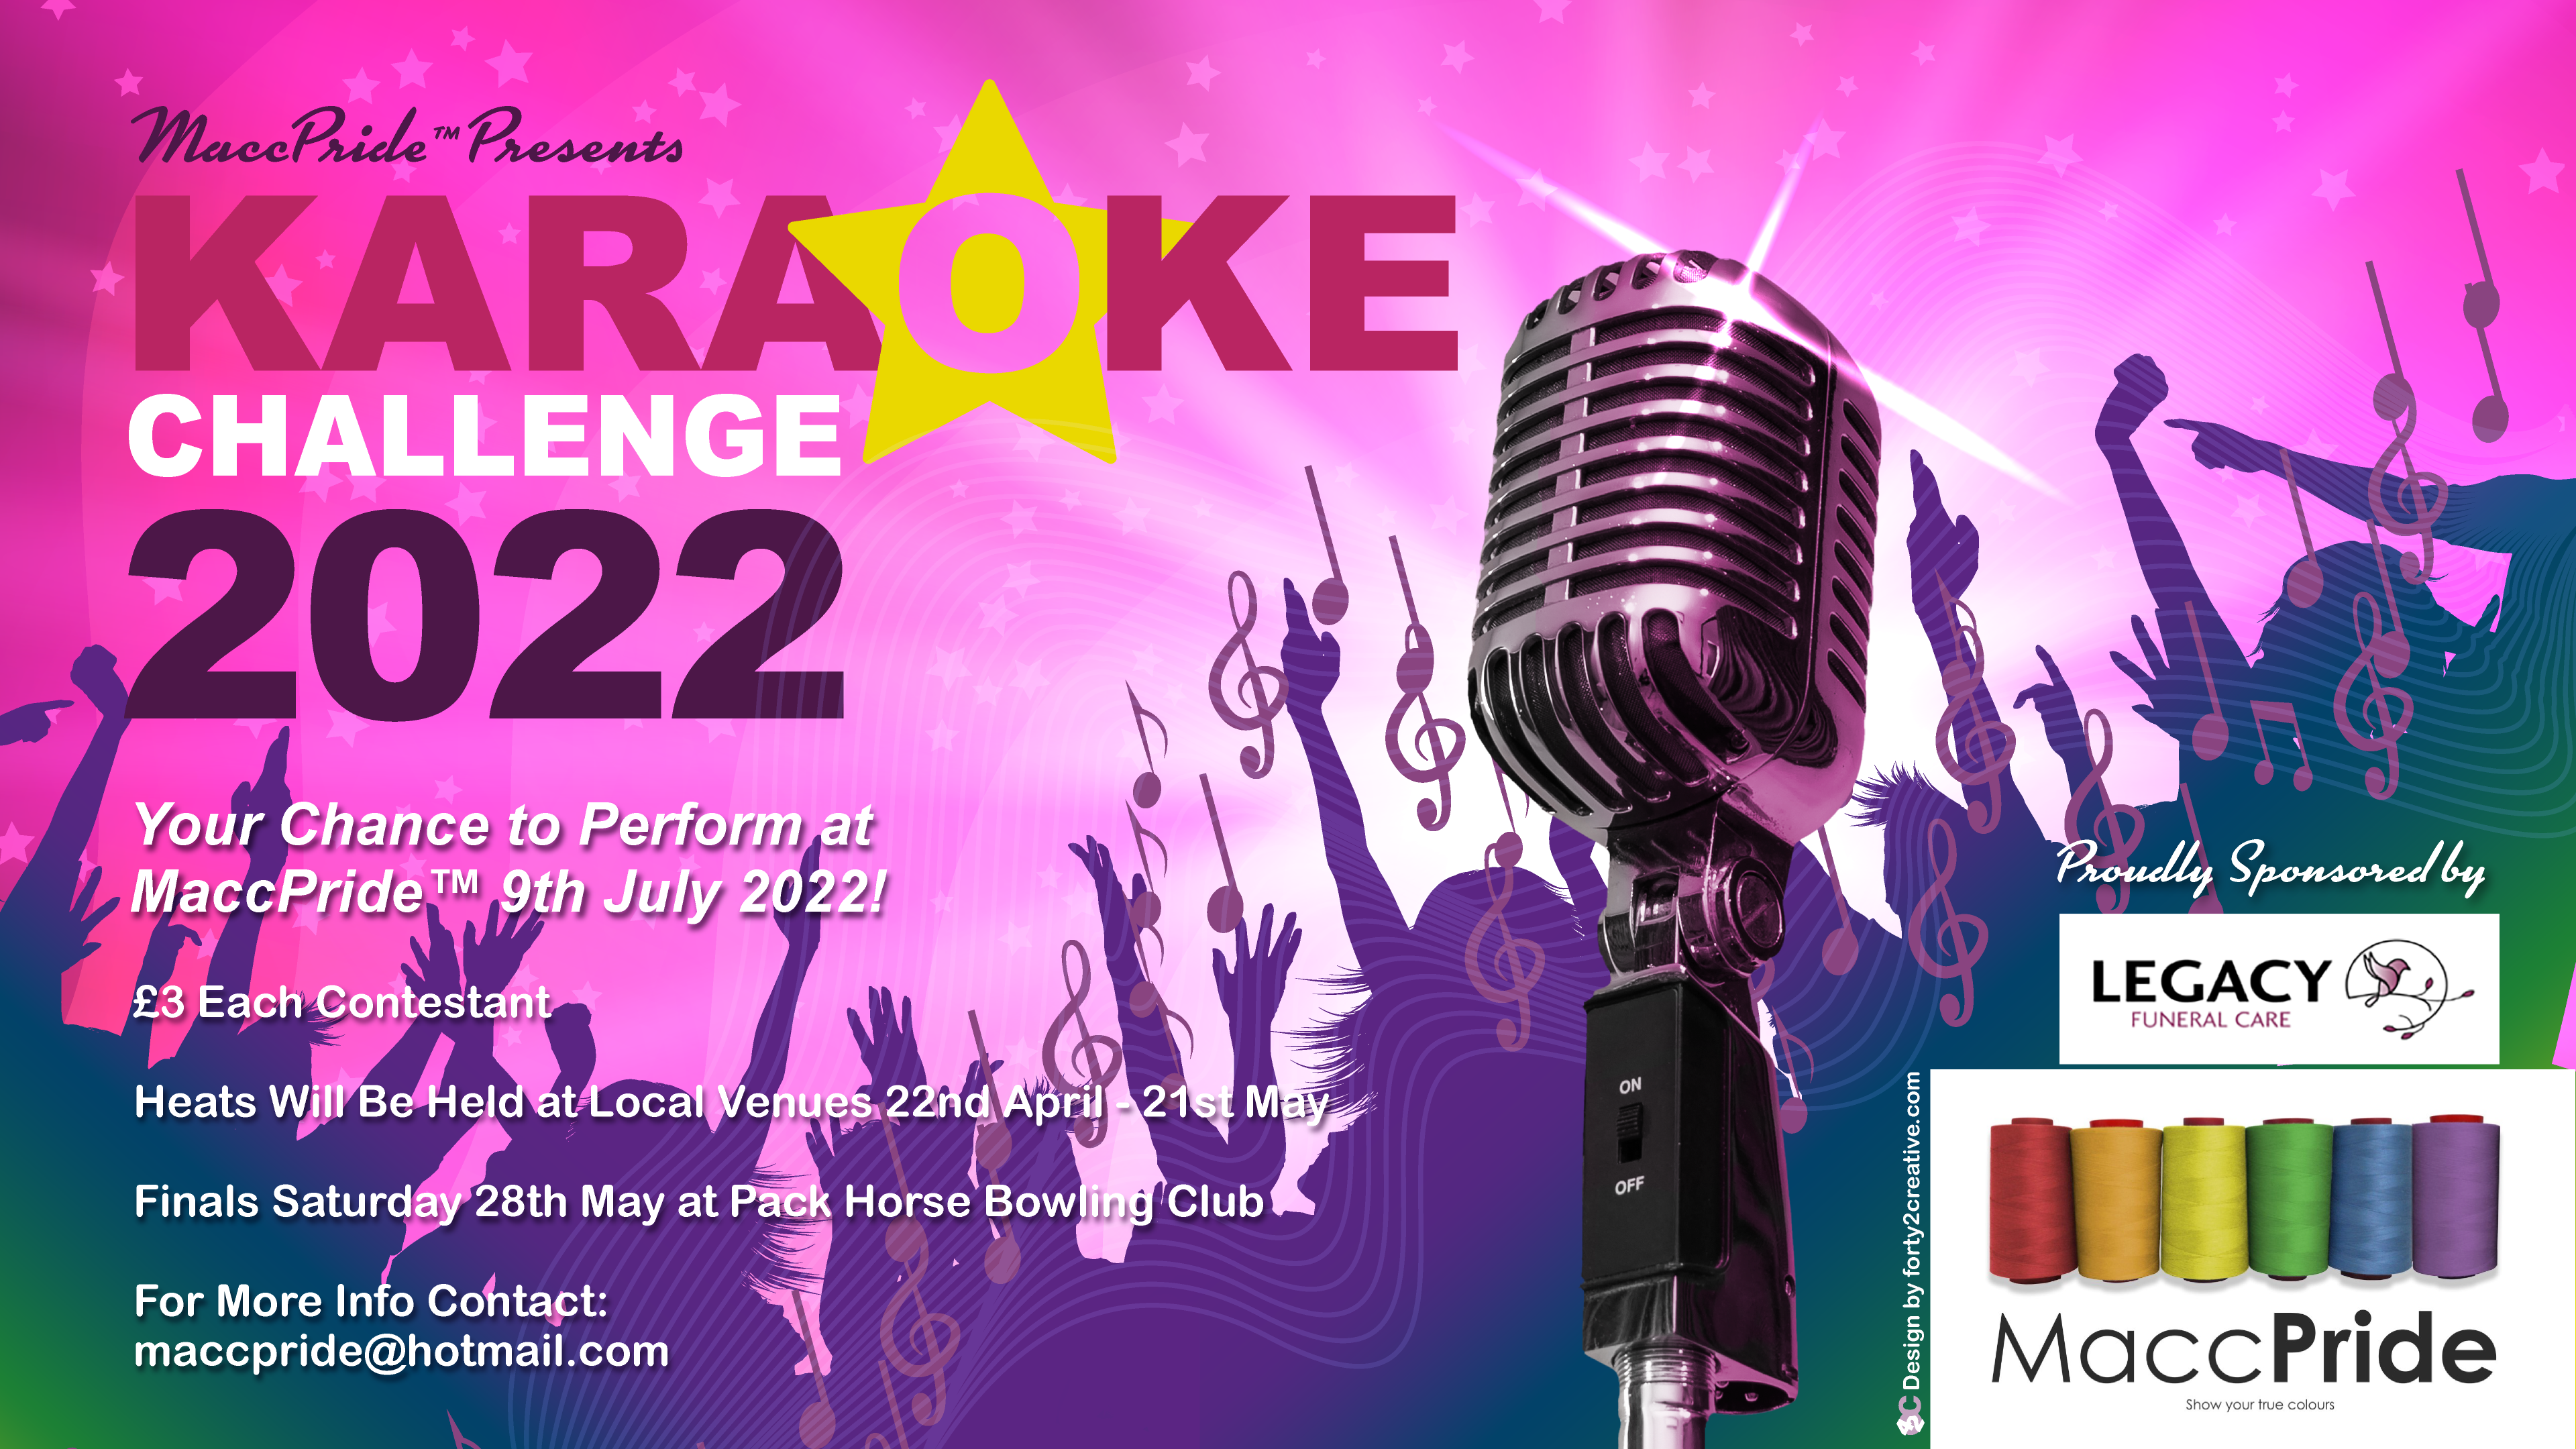 MaccPride Karaoke Challenge 2022 Winner #5